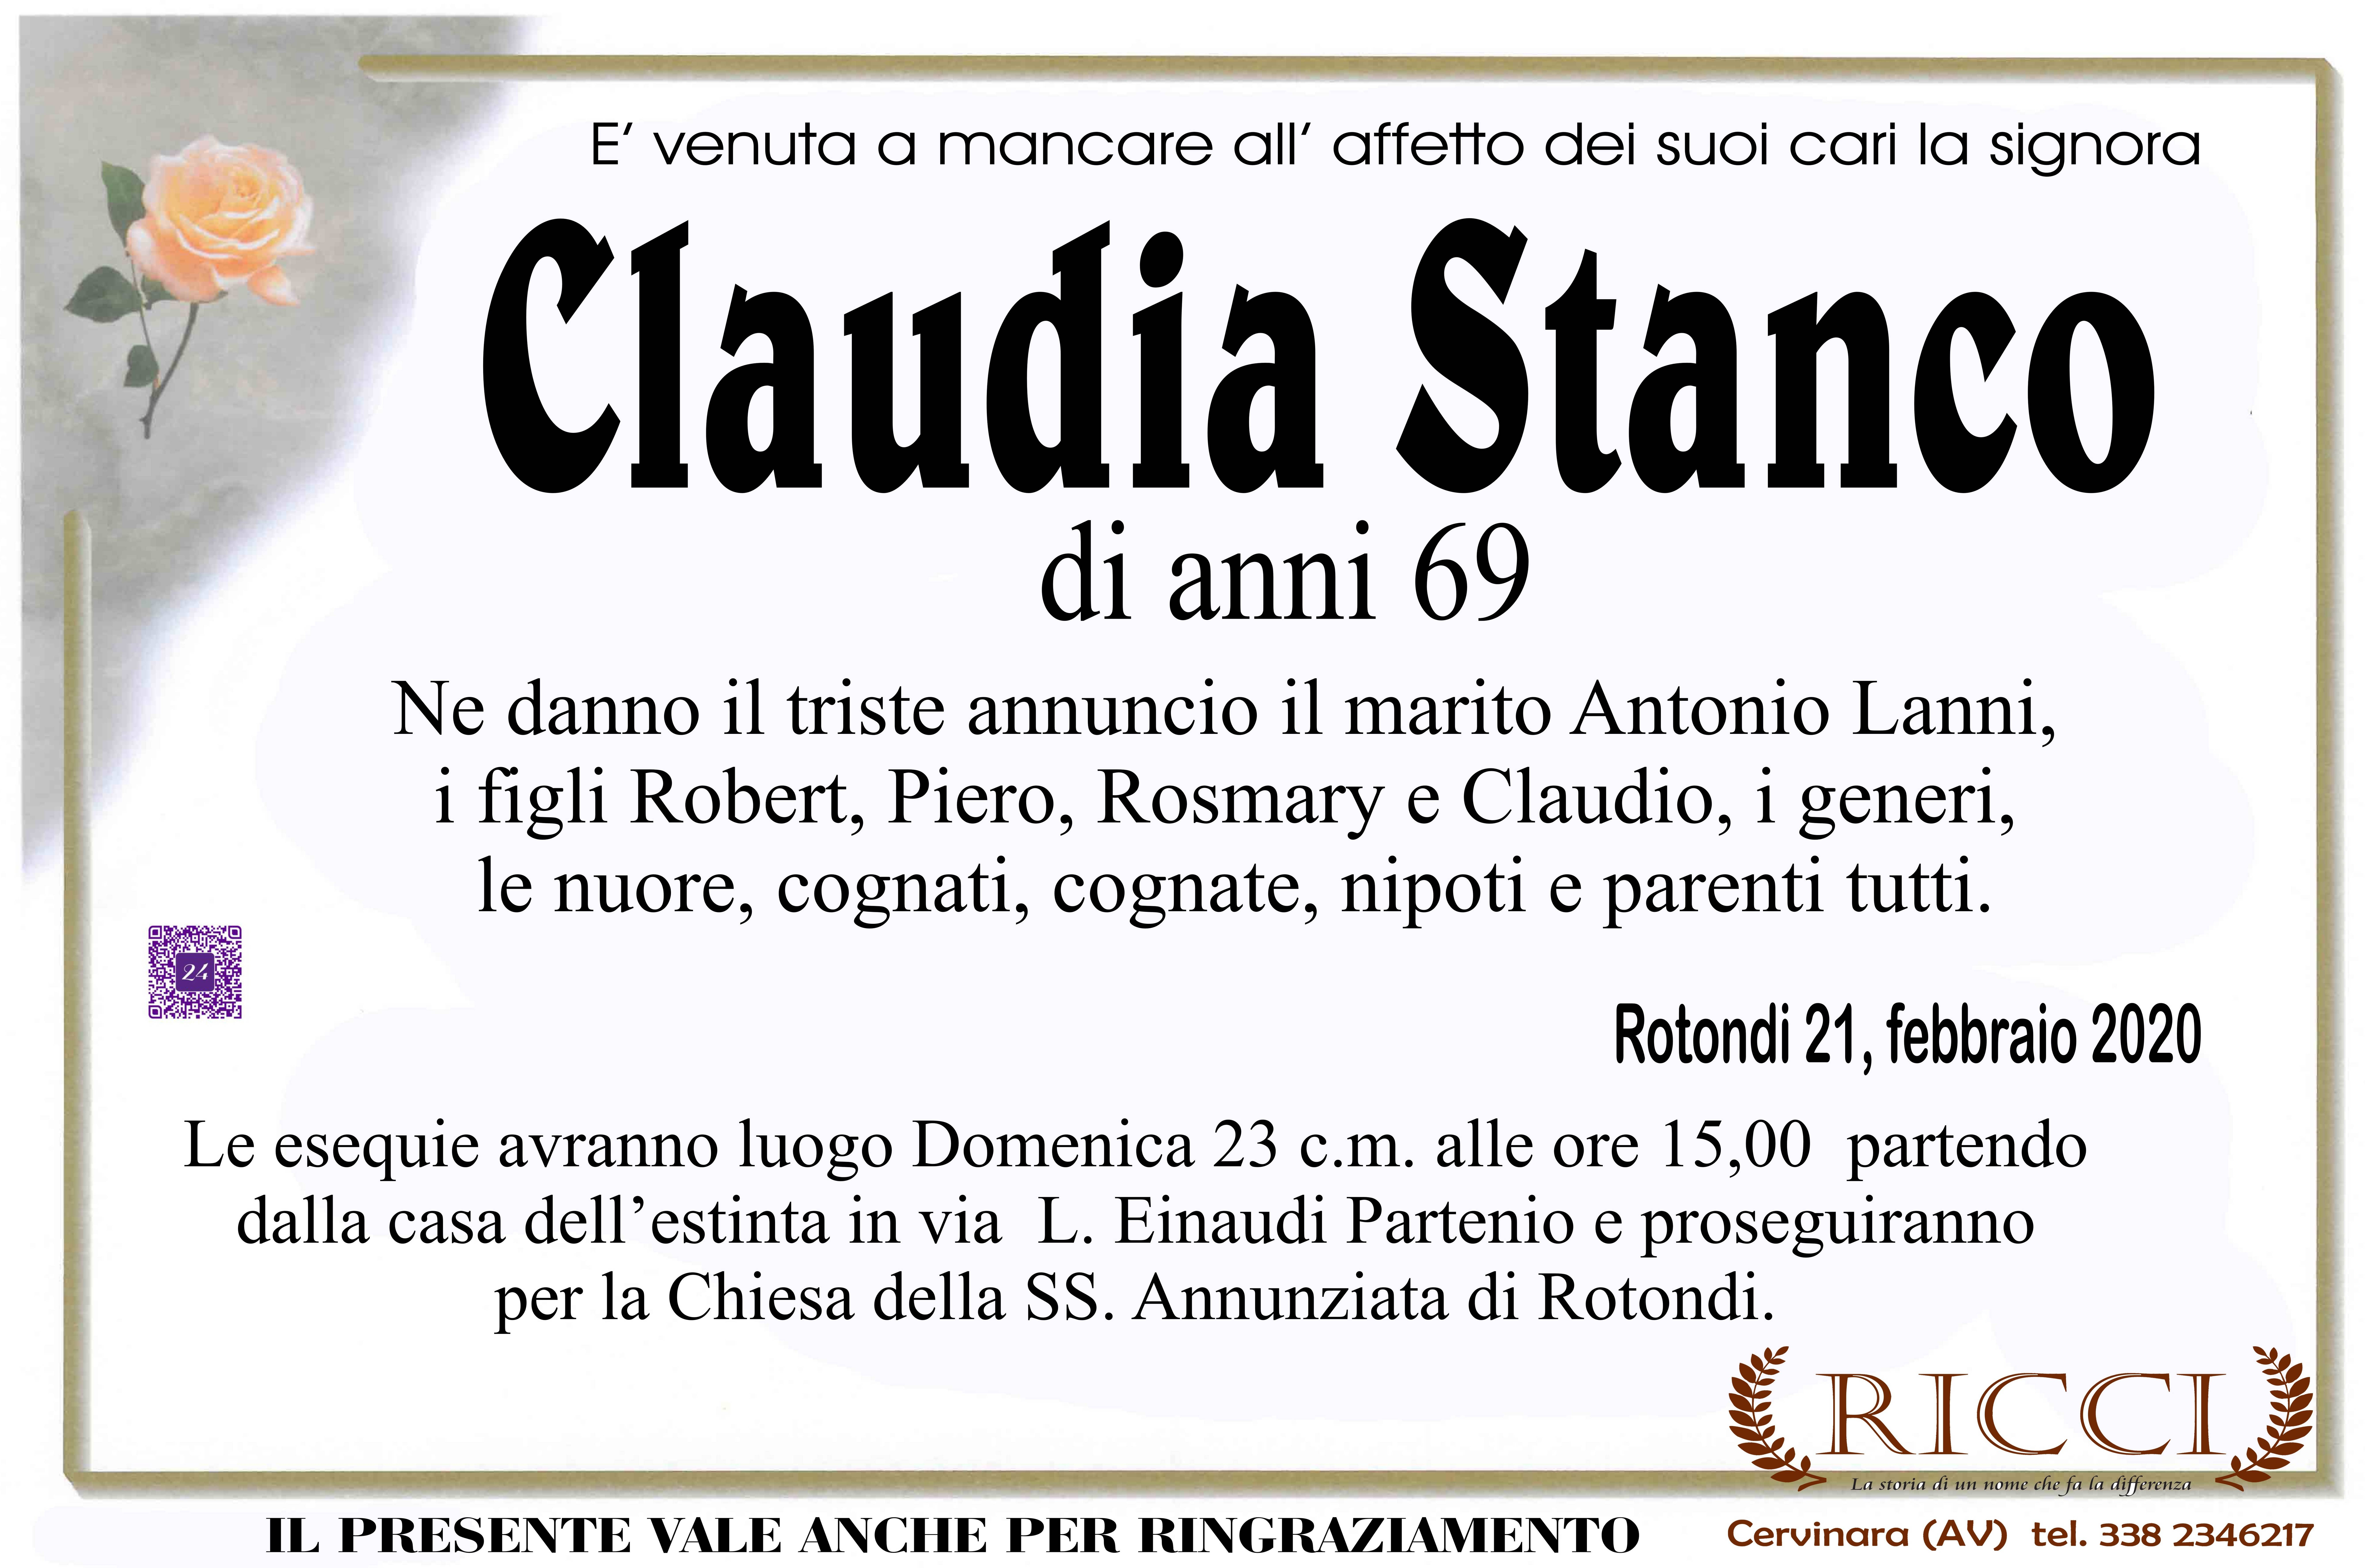 Claudia Stanco